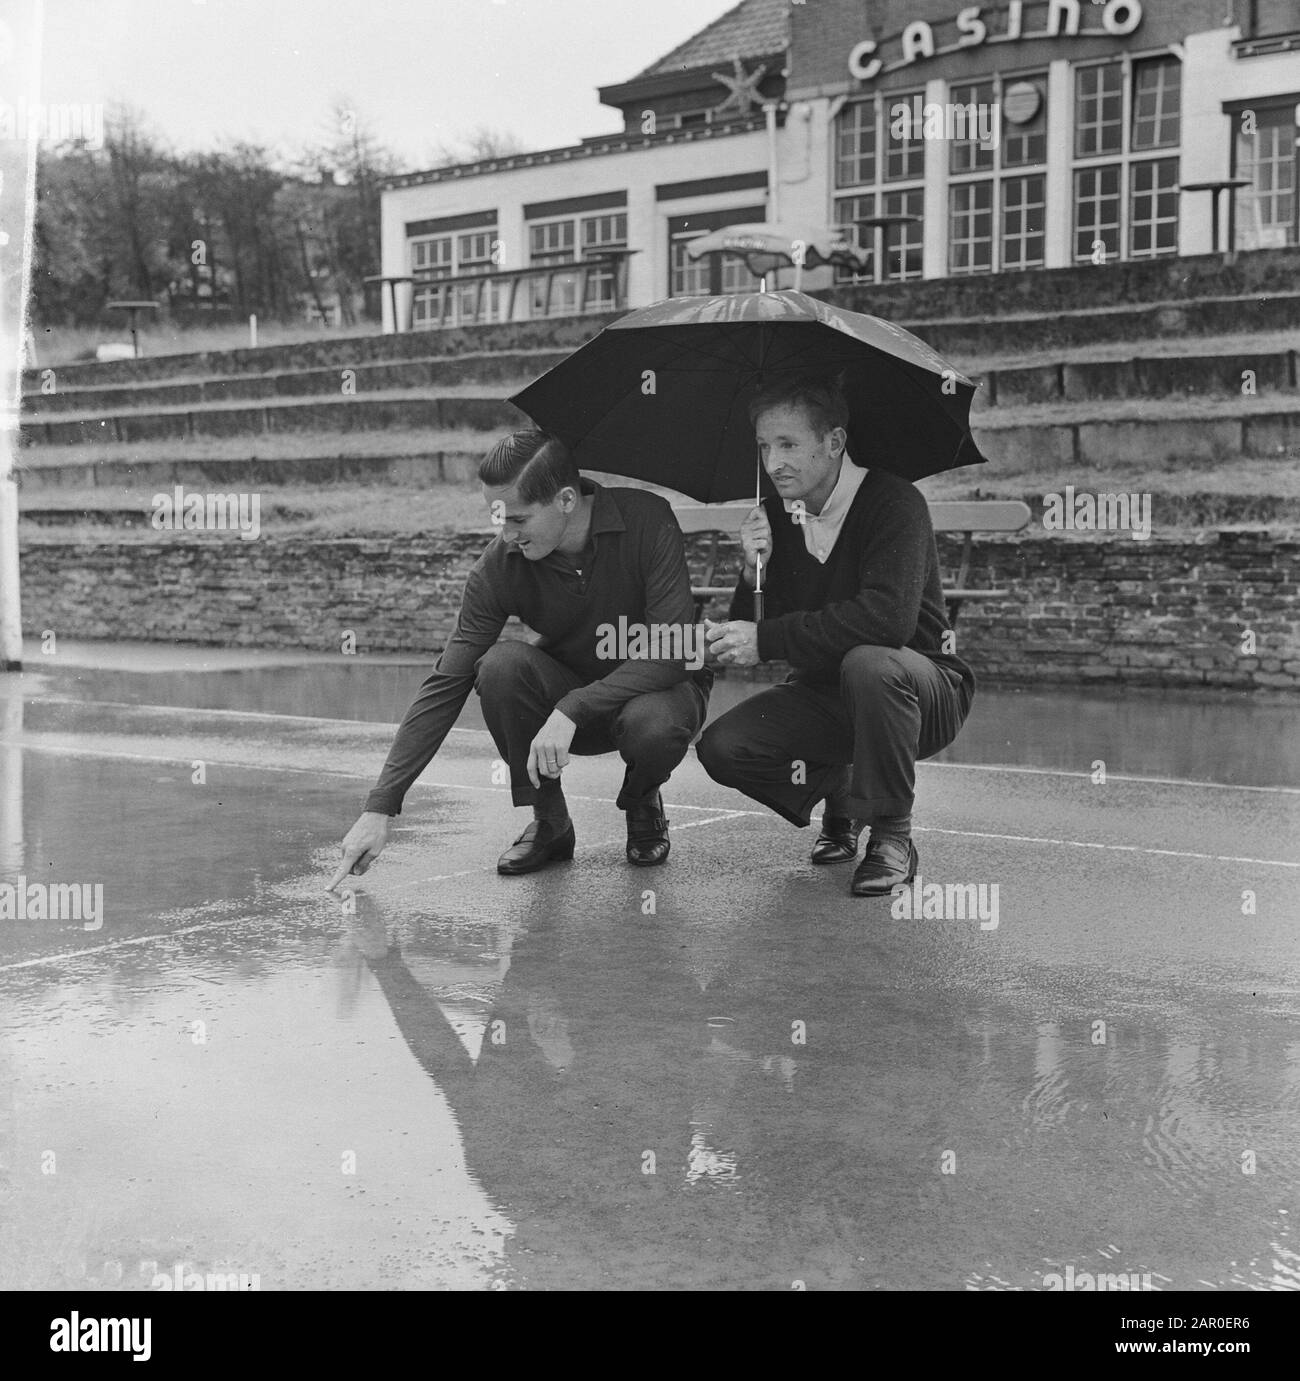 Noordwijk wartet bei schönem Wetter auf ein großes internationales Tennisturnier. Laver (rechts) und Anderson sehen den Track Datum: 20. August 1963 Ort: Noordwijk Schlüsselwörter: Jobs, Tennisturniere Stockfoto